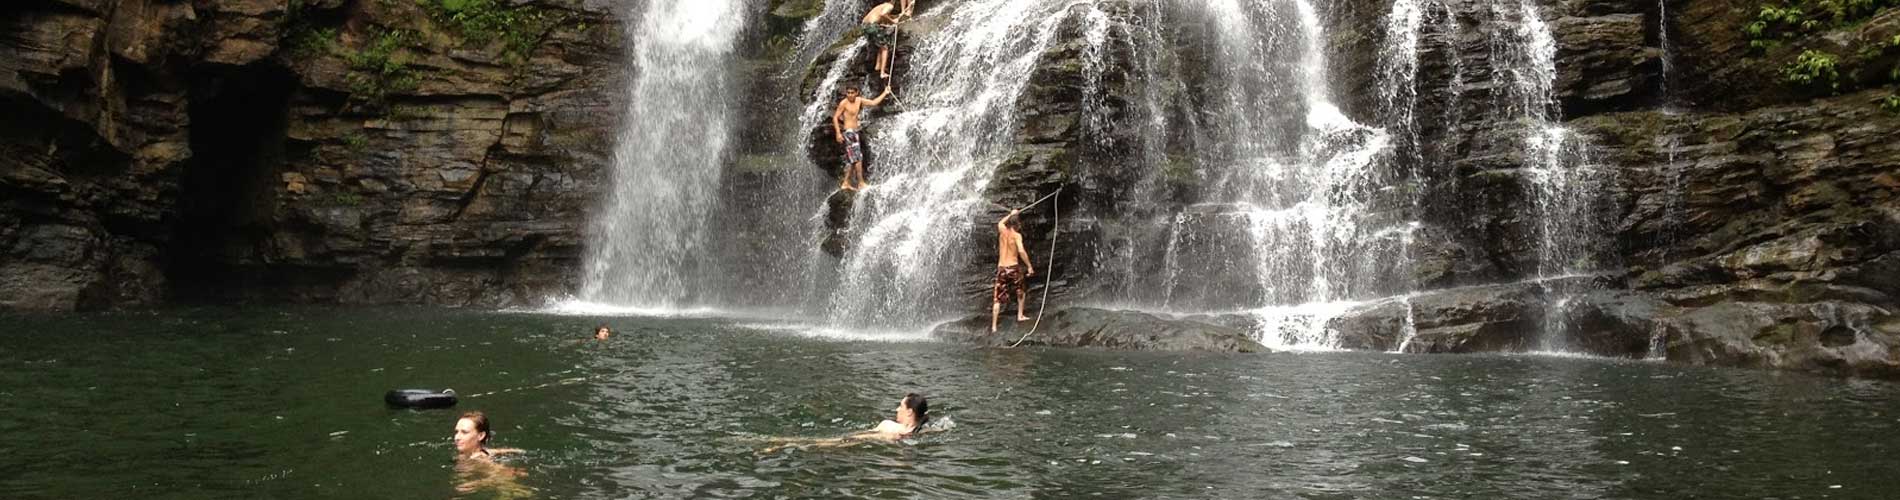 Swimming at waterfall